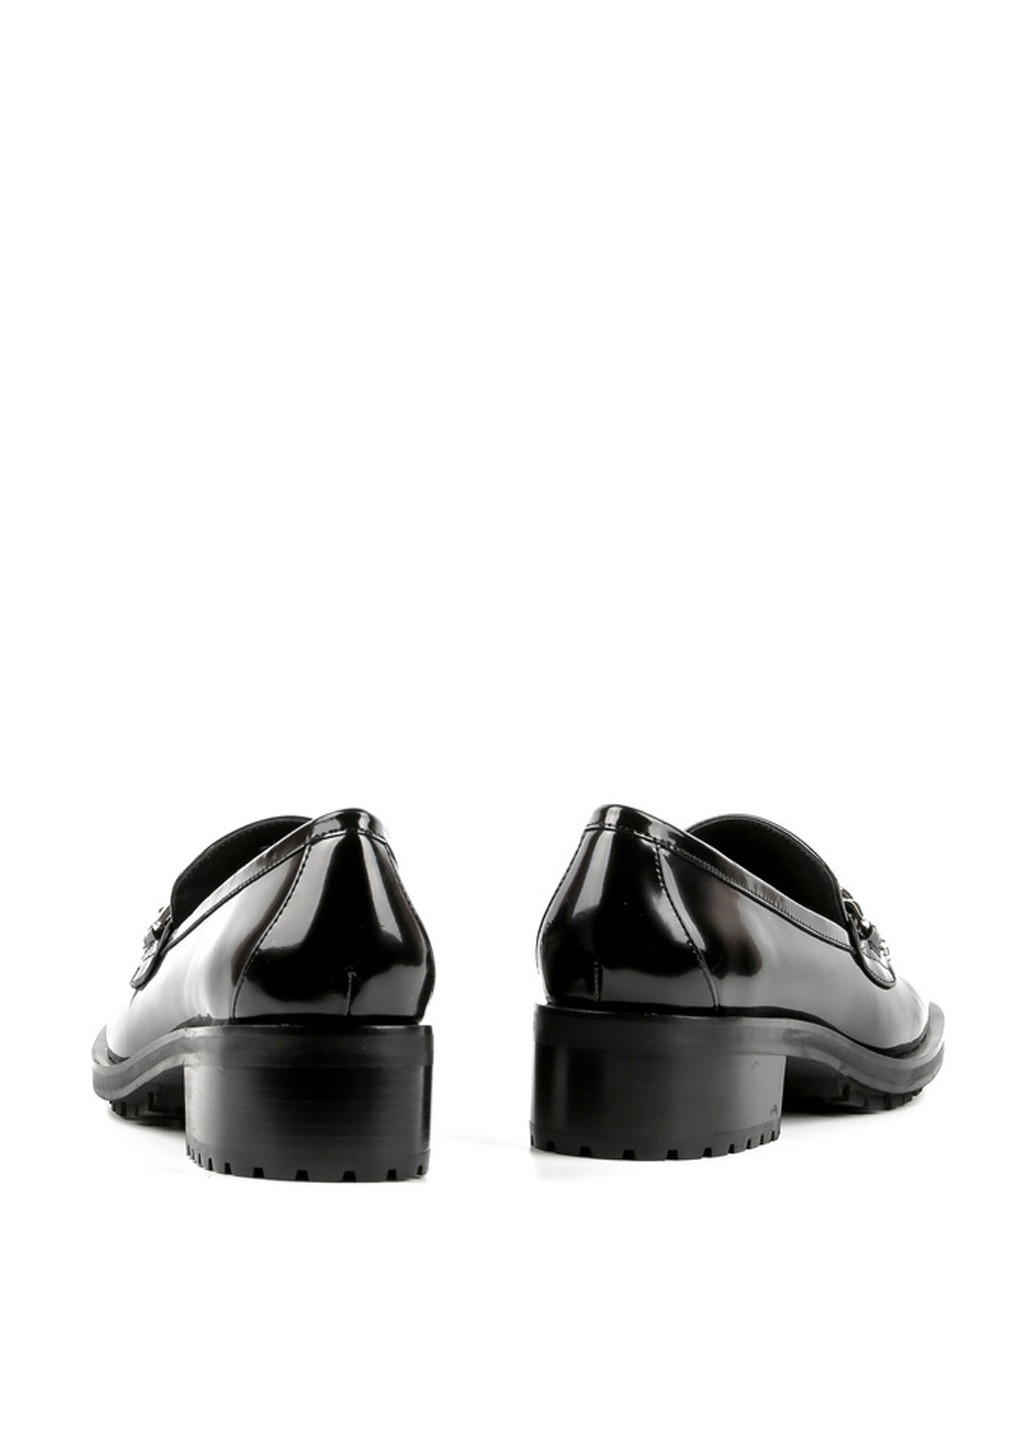 Туфли Le'BERDES на низком каблуке лаковые, с металлическими вставками